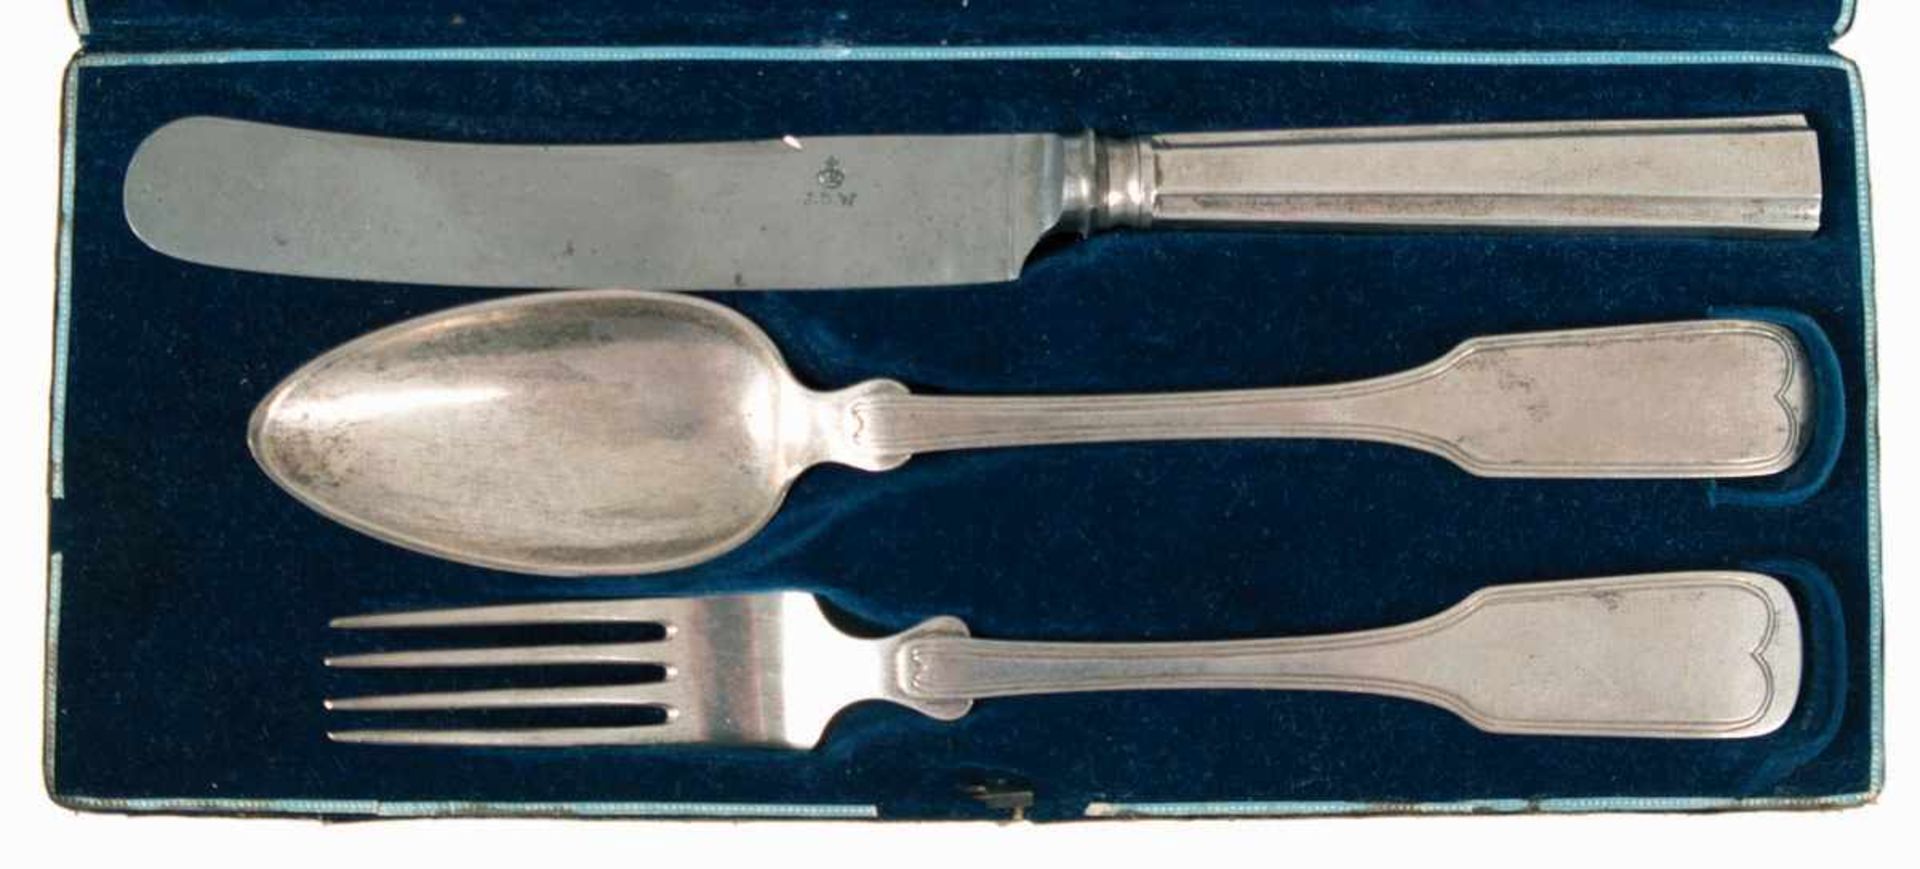 Reisebesteck, Leipzig um 1830, Silber, punziert, Tremolierstrich, ca. 101 g (ohne Messergewogen),